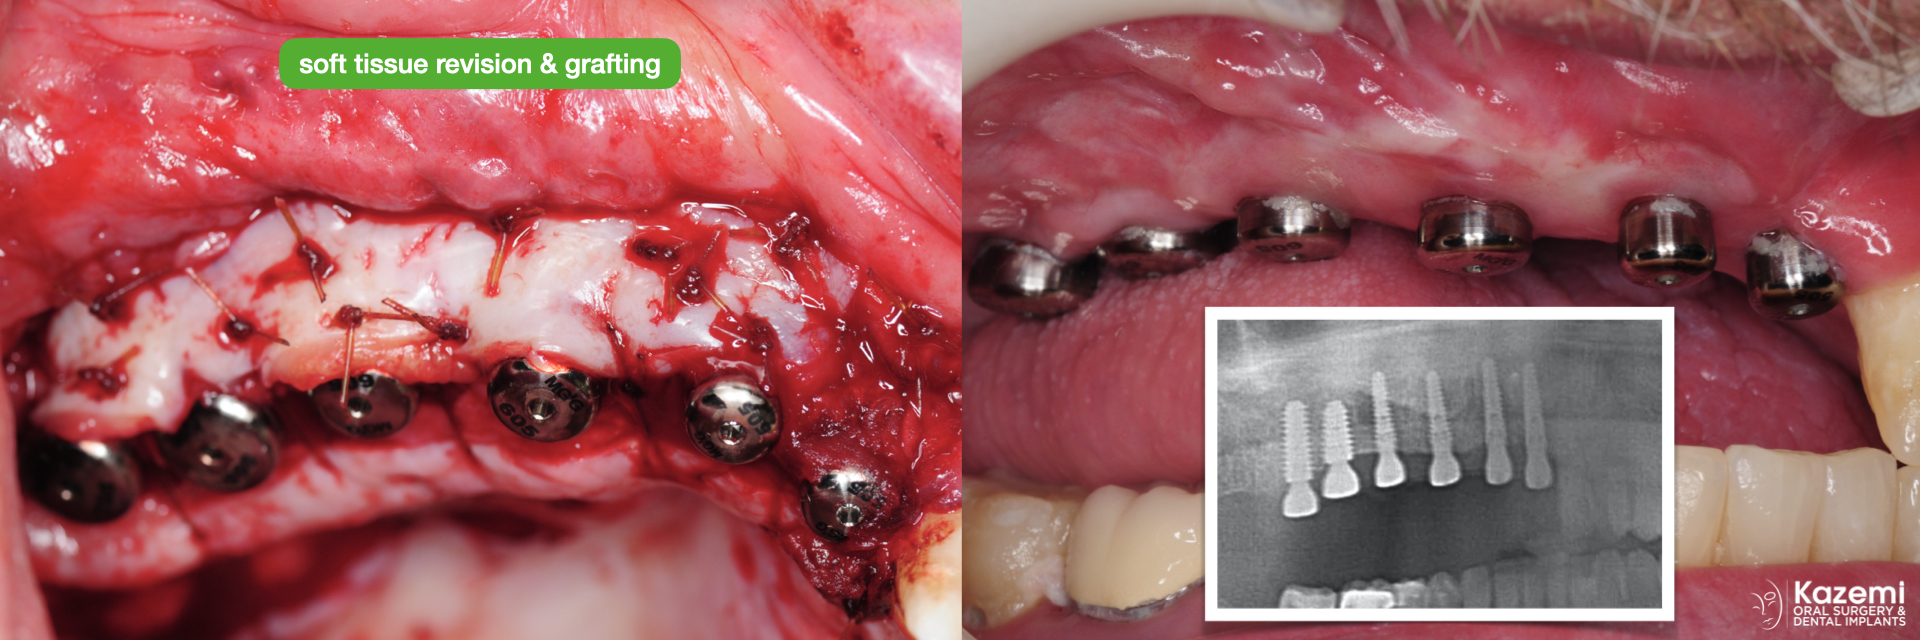 3.-gingival-revision-graft-vestibuloplasty-keratinized-gingiva-dental-implants-kazemi-oral-surgery-1